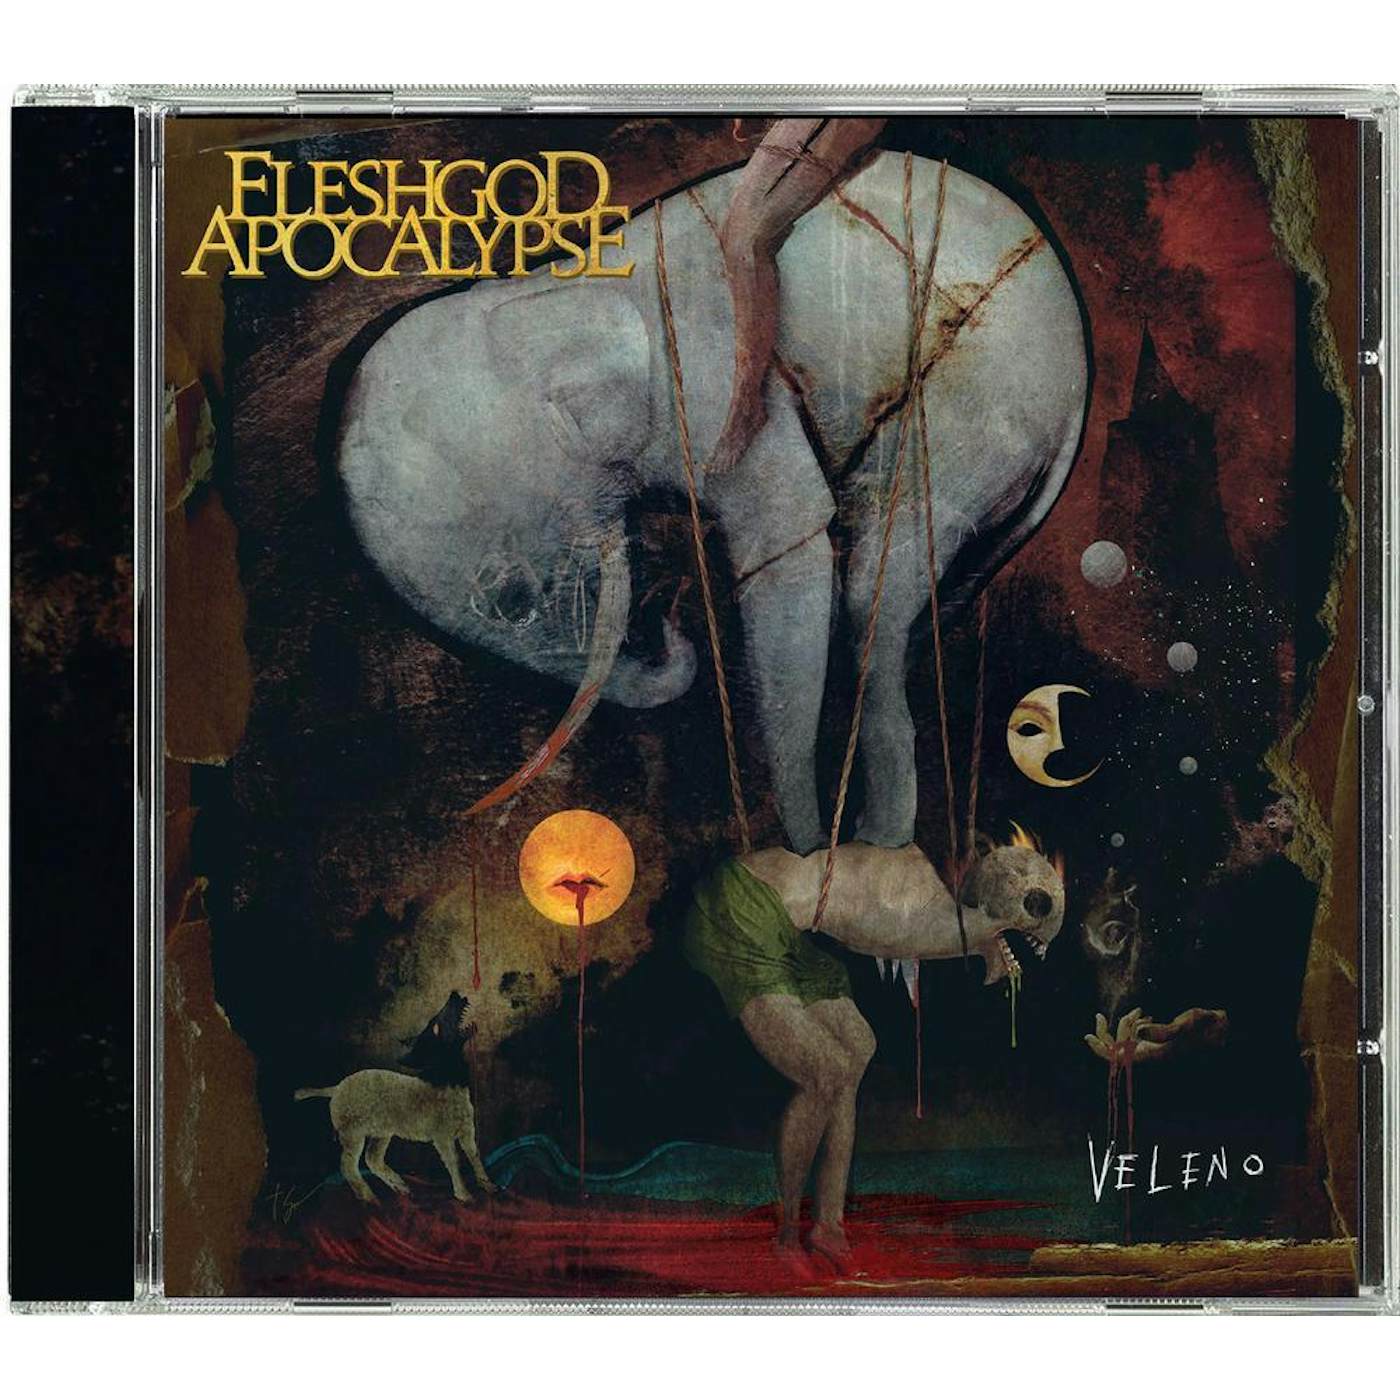 Fleshgod Apocalypse "Veleno" CD